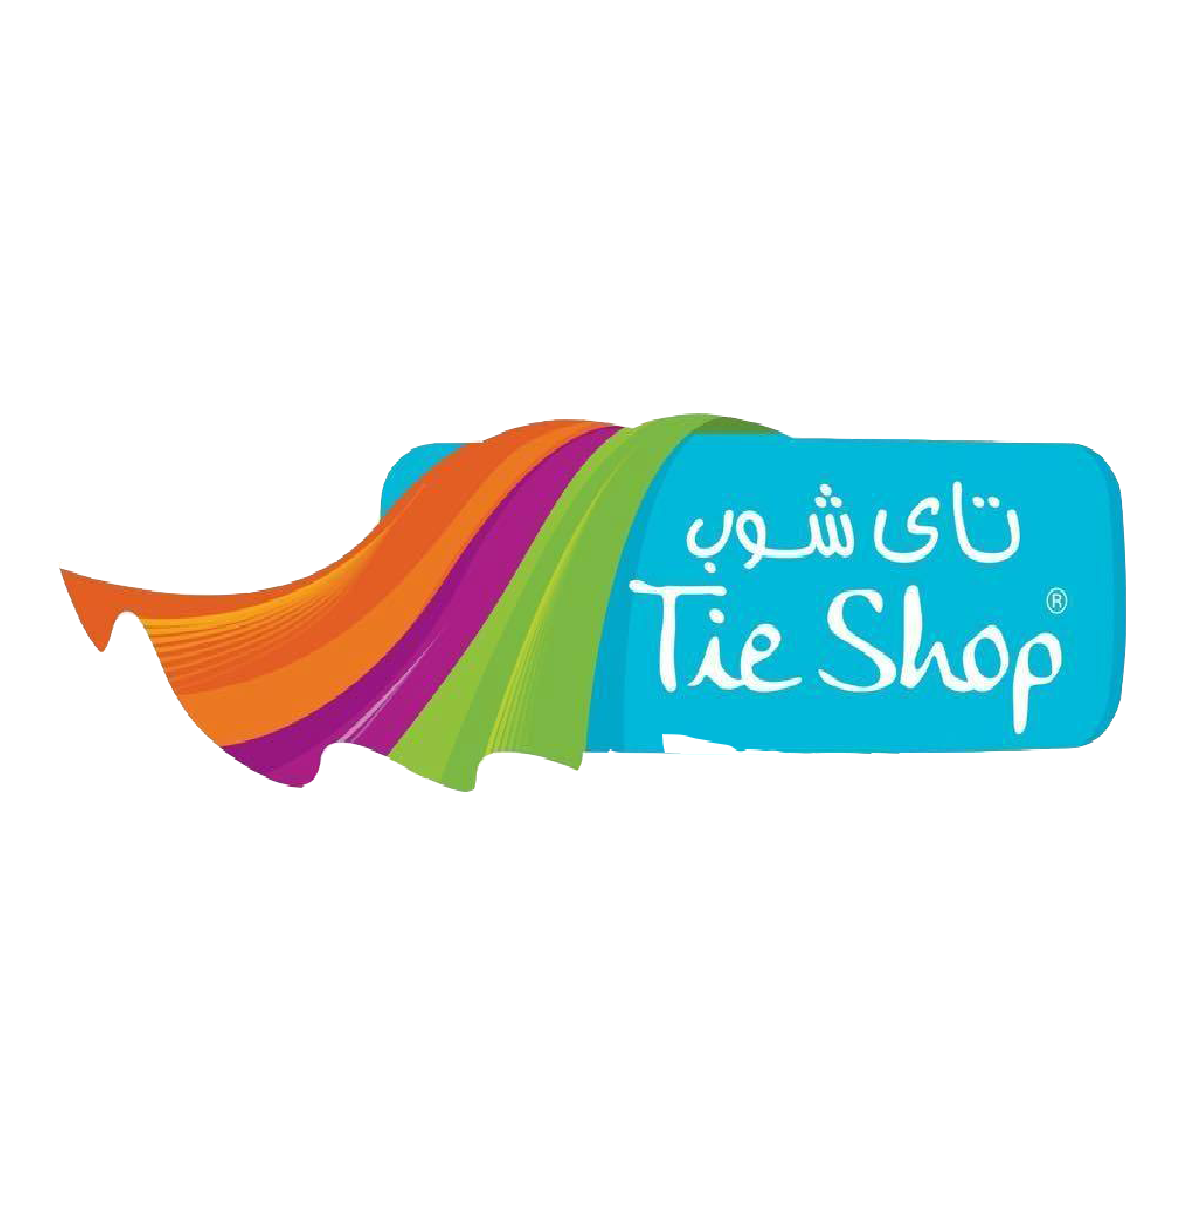 The Tie Shop